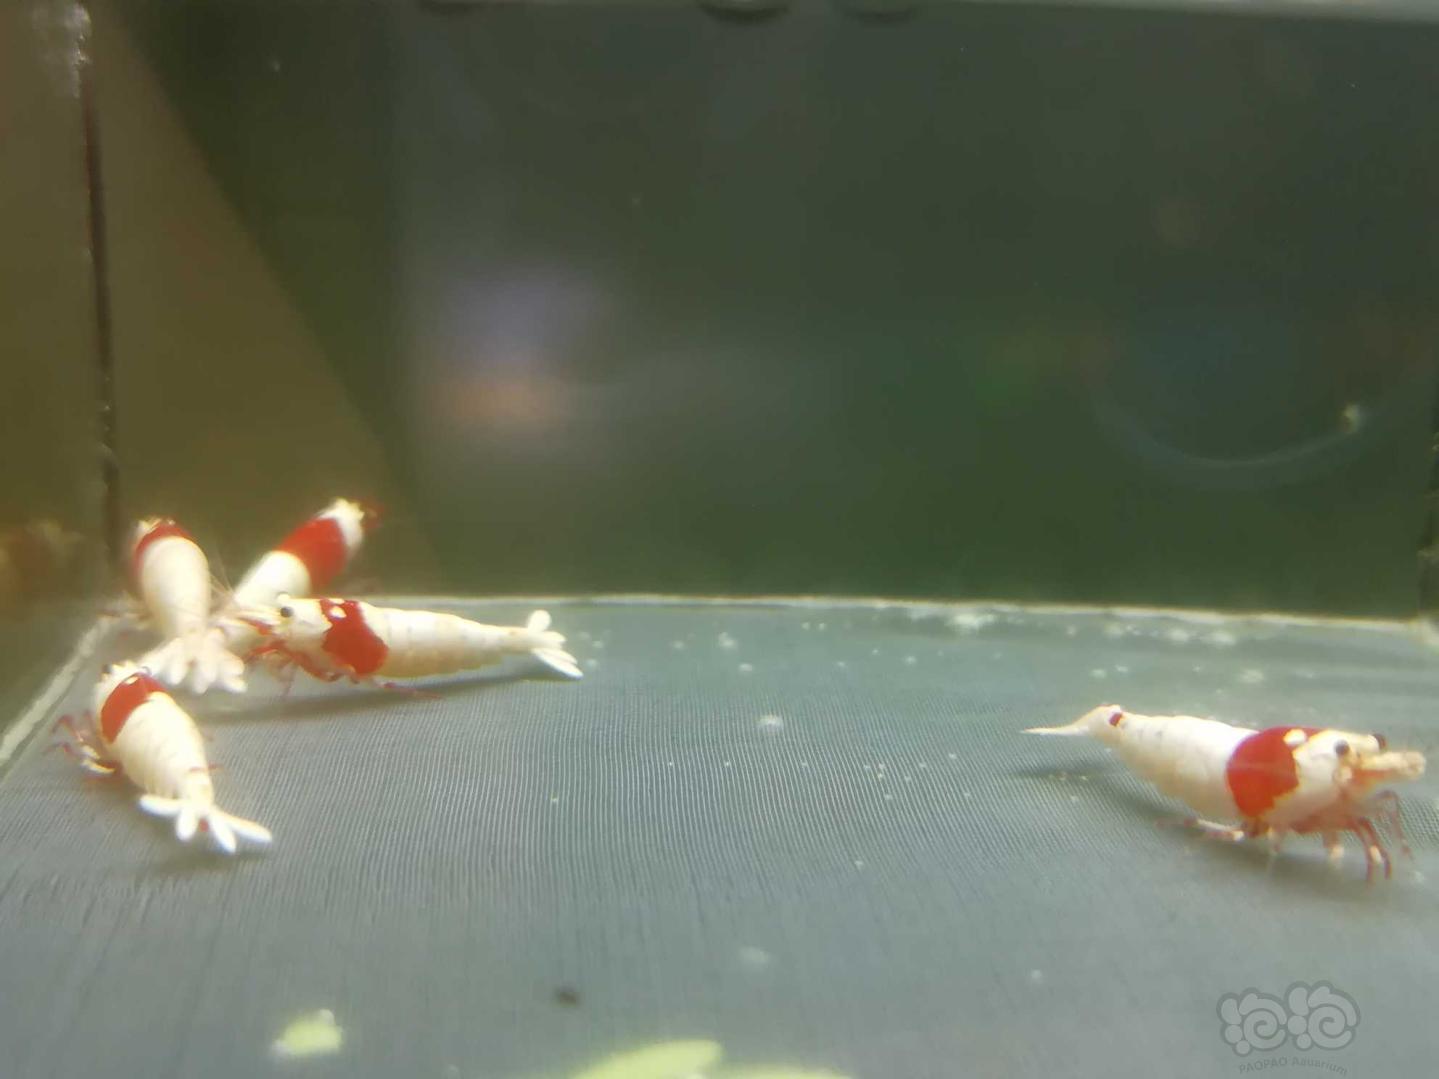 【虾】2020-05-18#RMB拍卖#红白纯血白躯水晶虾成虾一份5只-图5